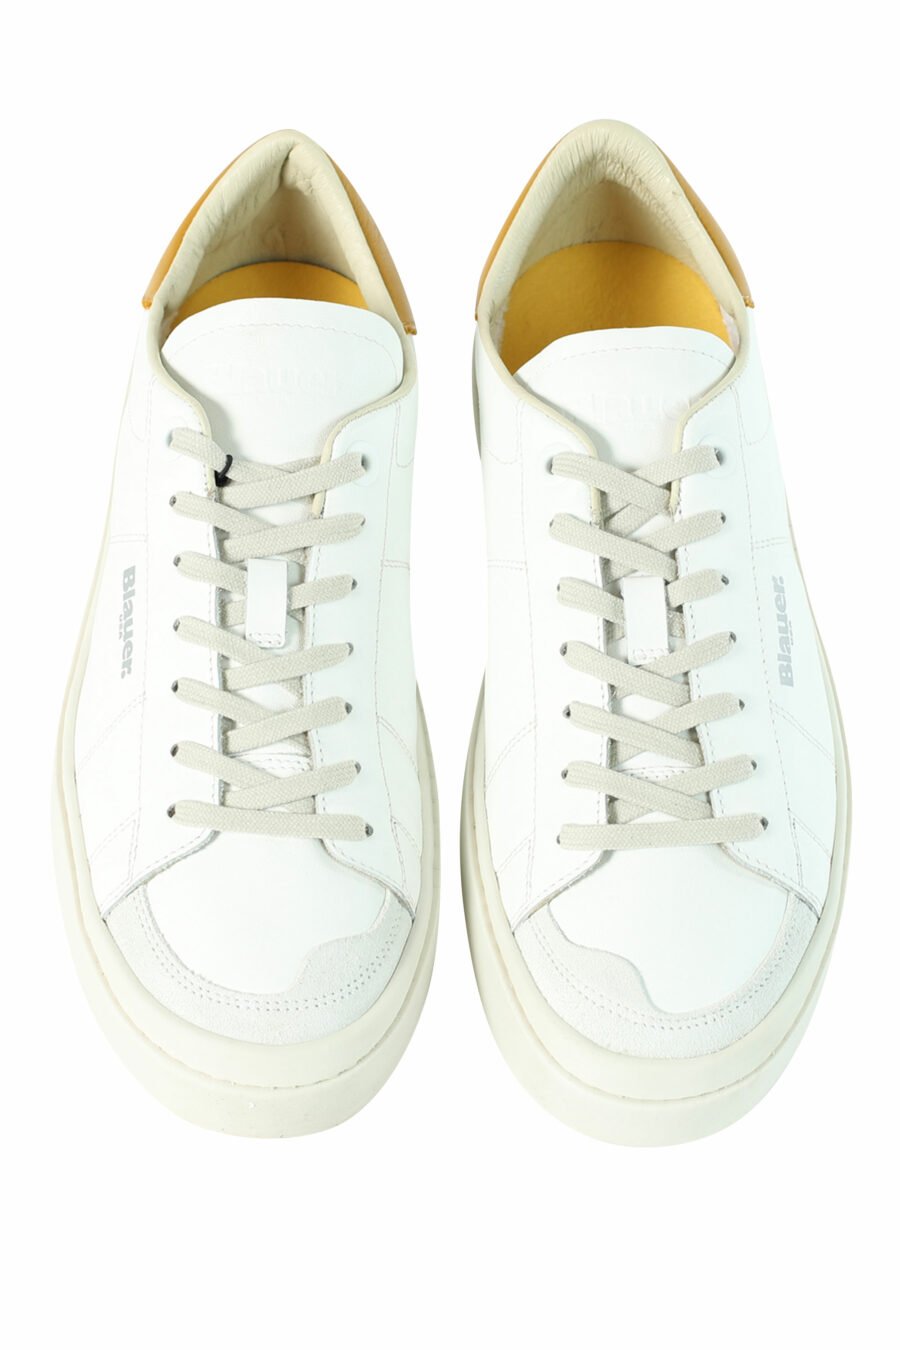 Zapatillas "STATEN" blancas con detalles amarillos - 8058156501072 5